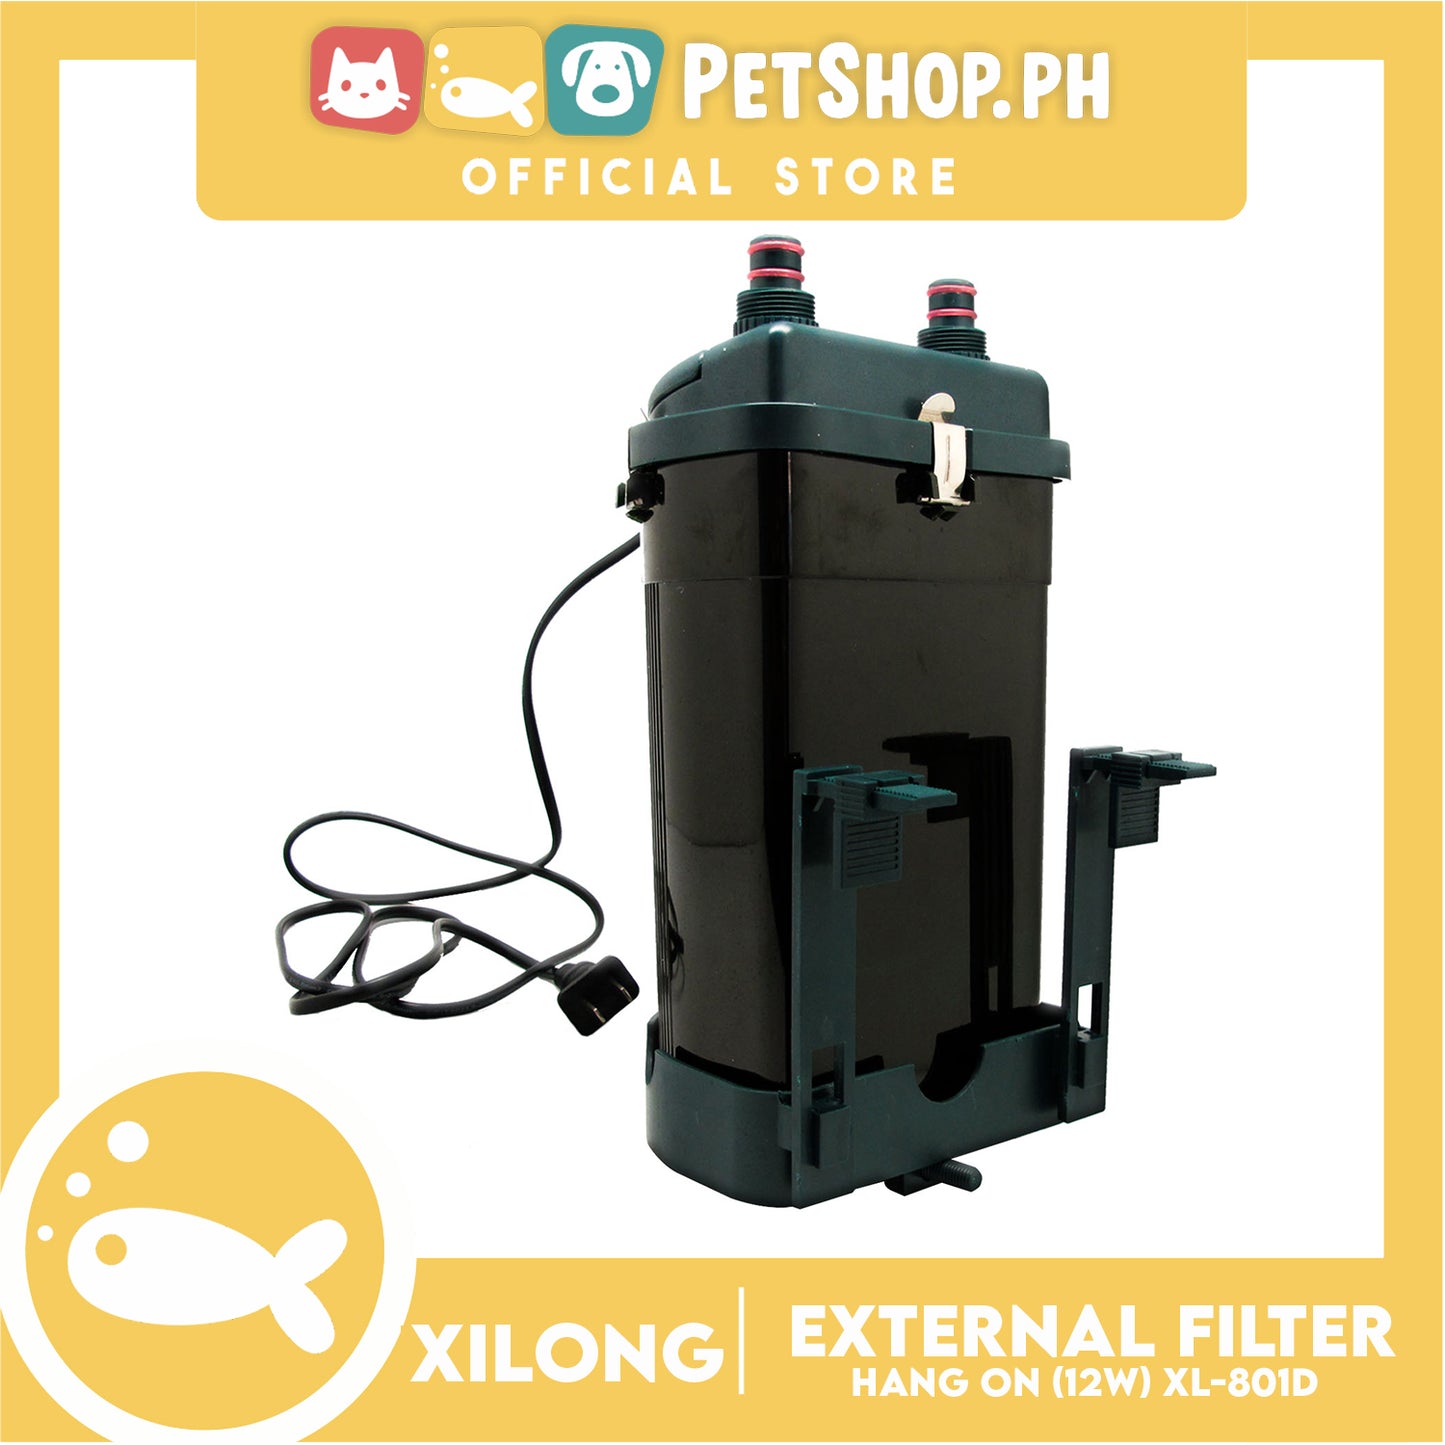 XL-801D Hang On External Filter